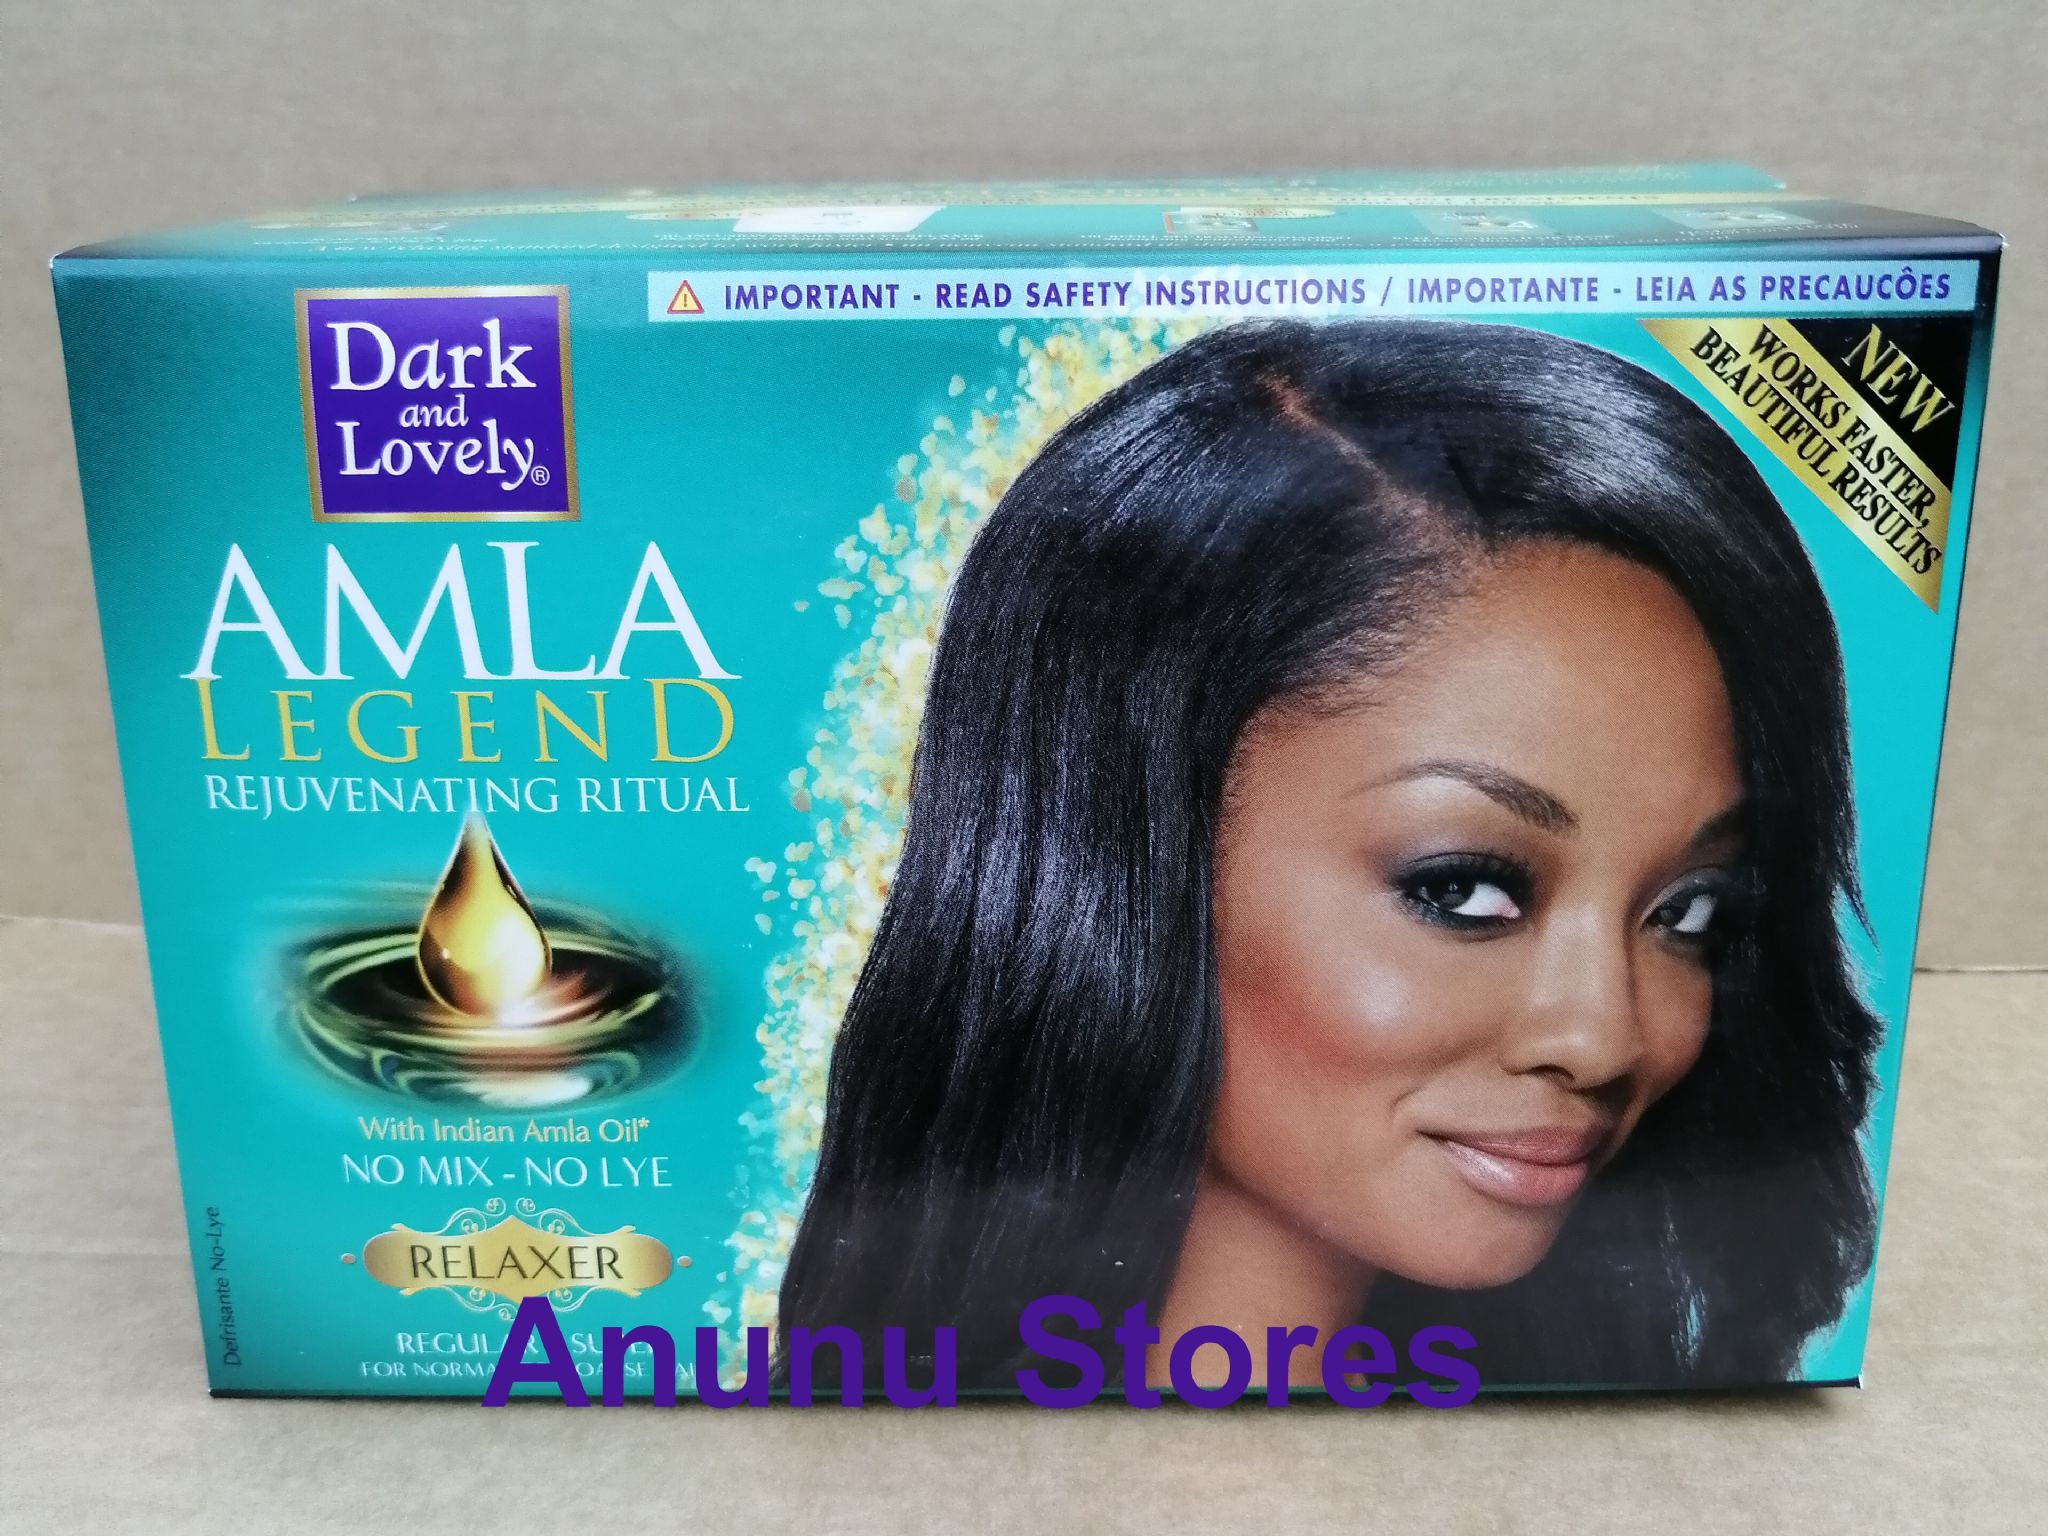 Dark and Lovely Amla Legend Rejuvenating Ritual Relaxer Kit